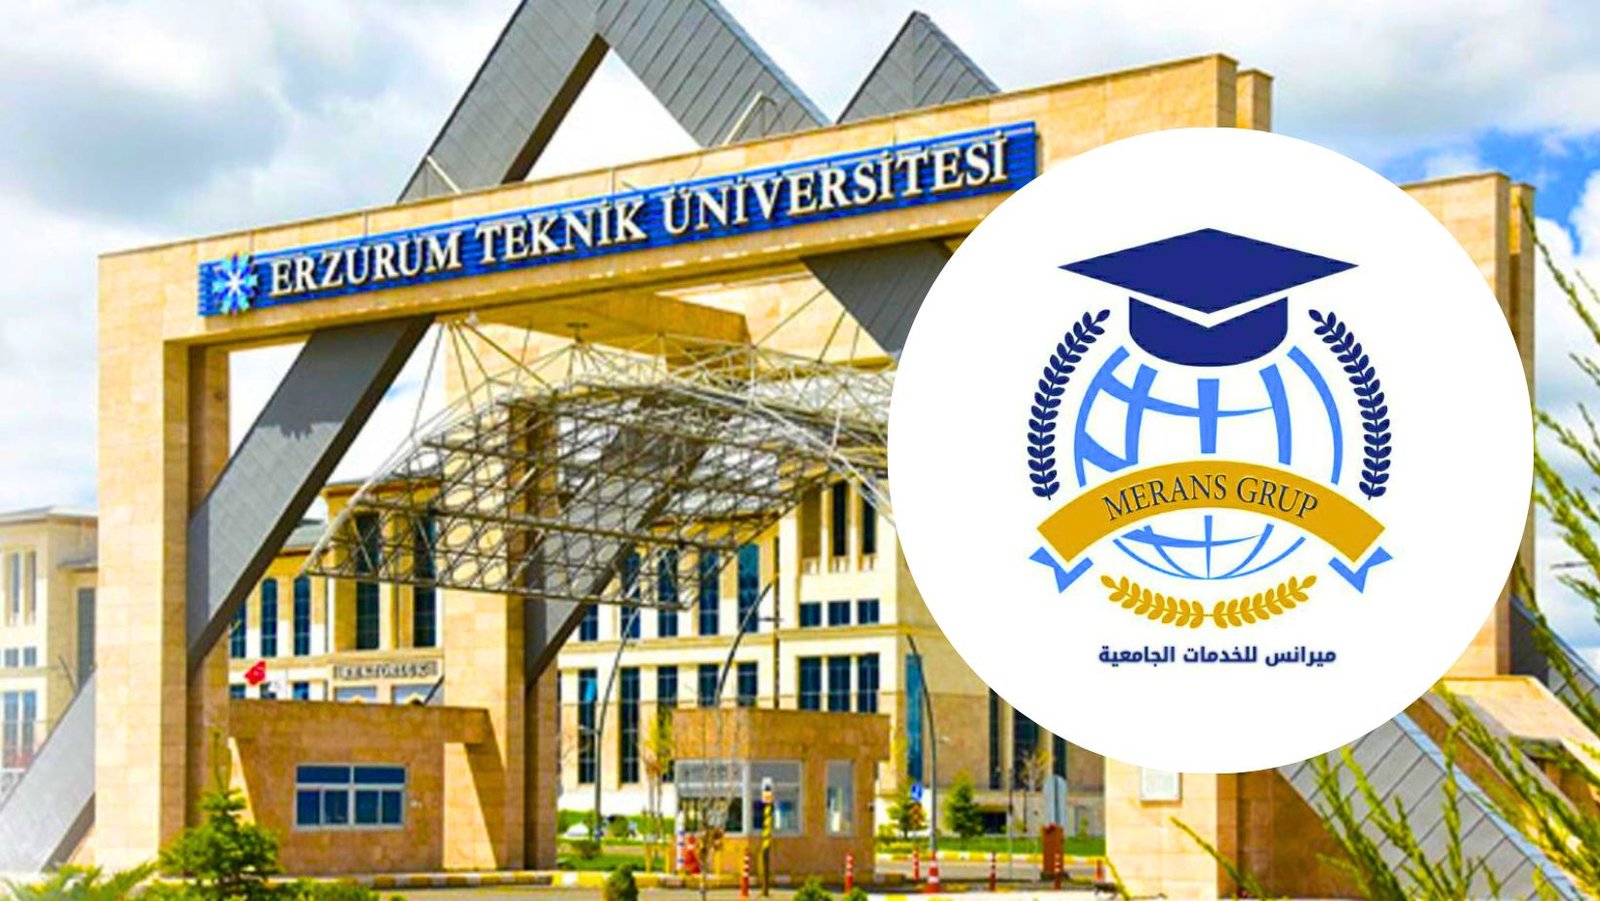 جامعة ارزروم تكنيك – Erzurum Teknik Üniversitesi